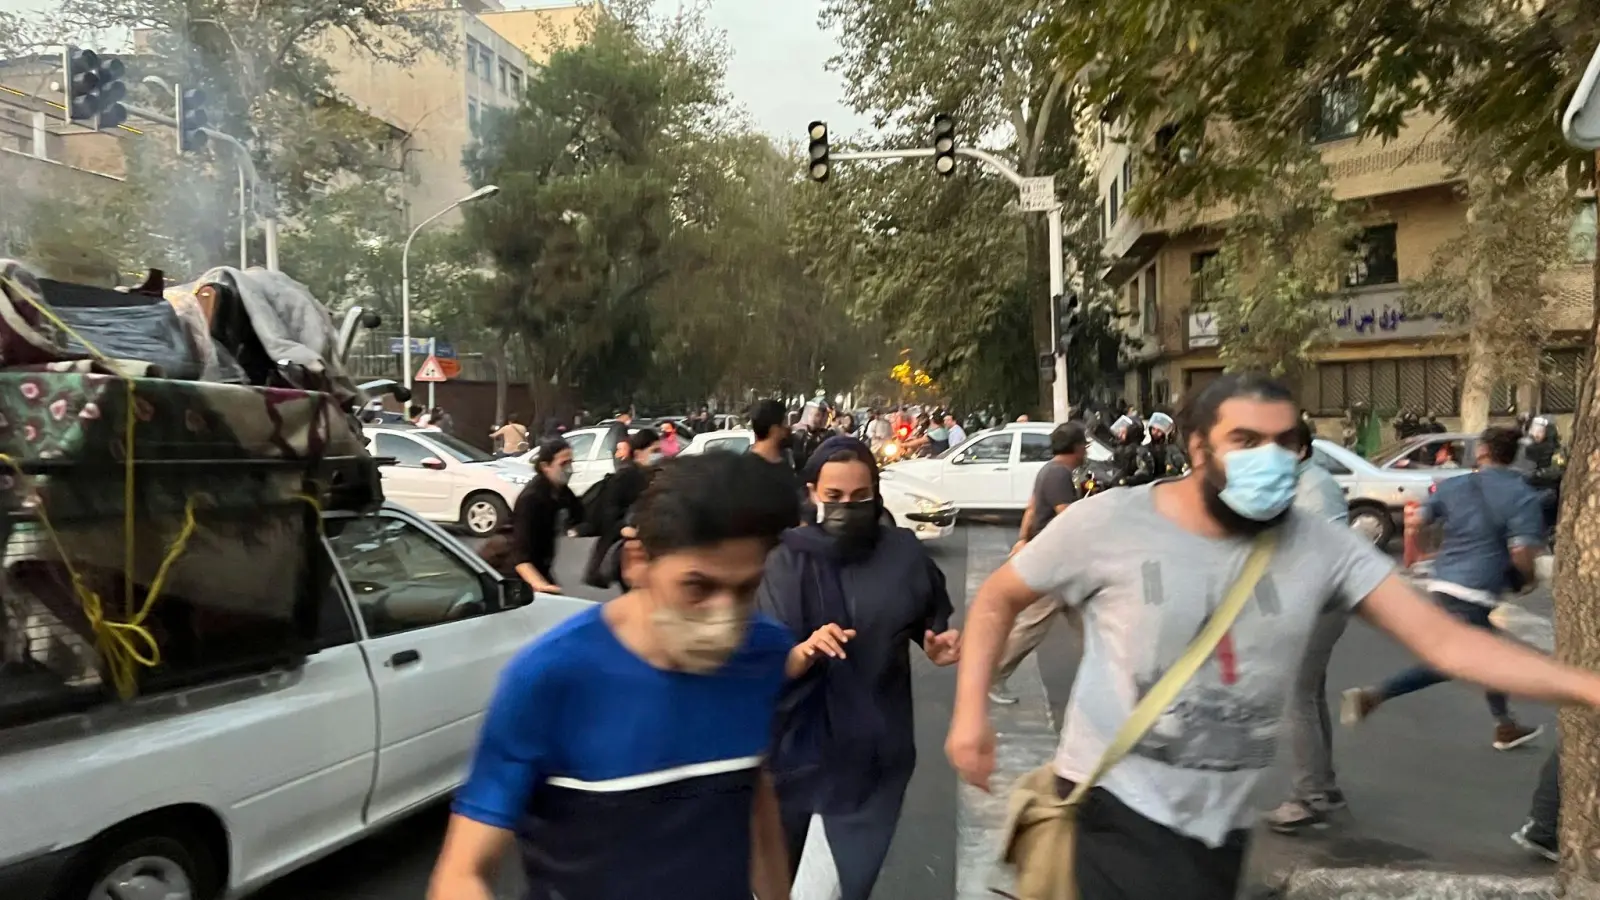 Vergangenen Montag in der iranischen Hauptstadt: Menschen fliehen vor der Polizei während eines Protests. (Foto: Uncredited/AP/dpa)